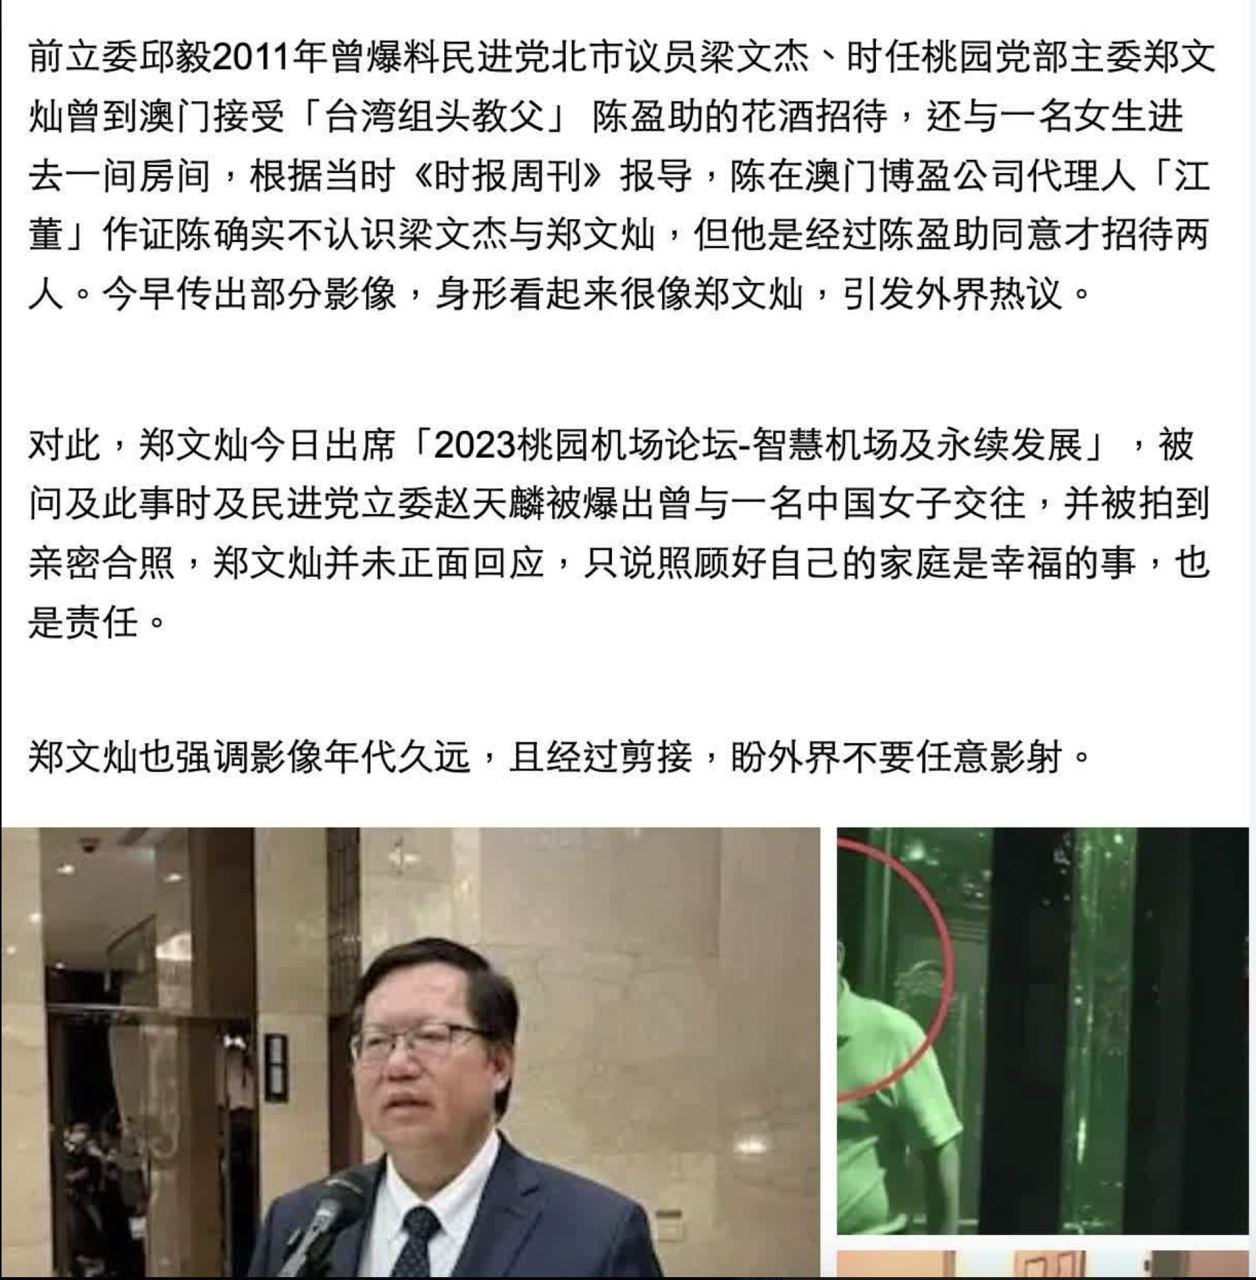 台湾 行政院 副院长郑文灿 与一名女子进入饭店私会的影片